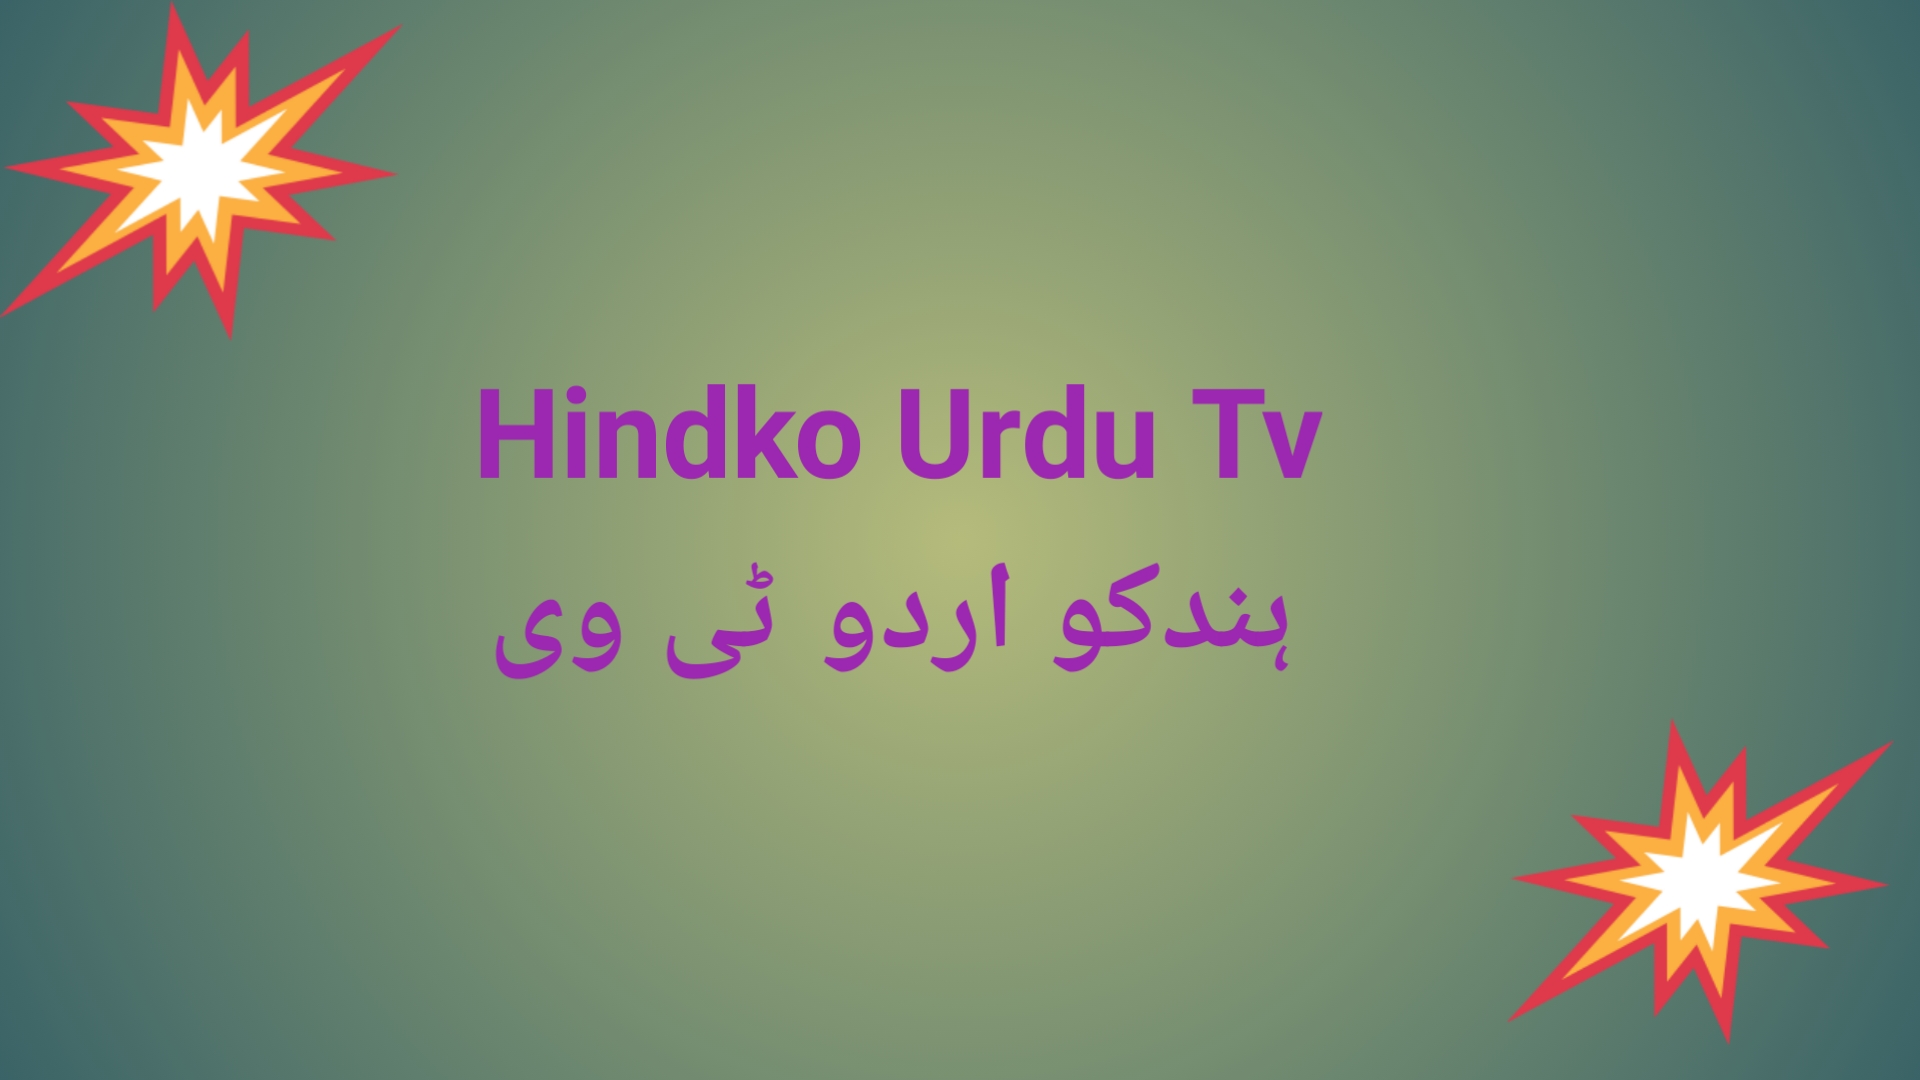 HINDKO URDU TV